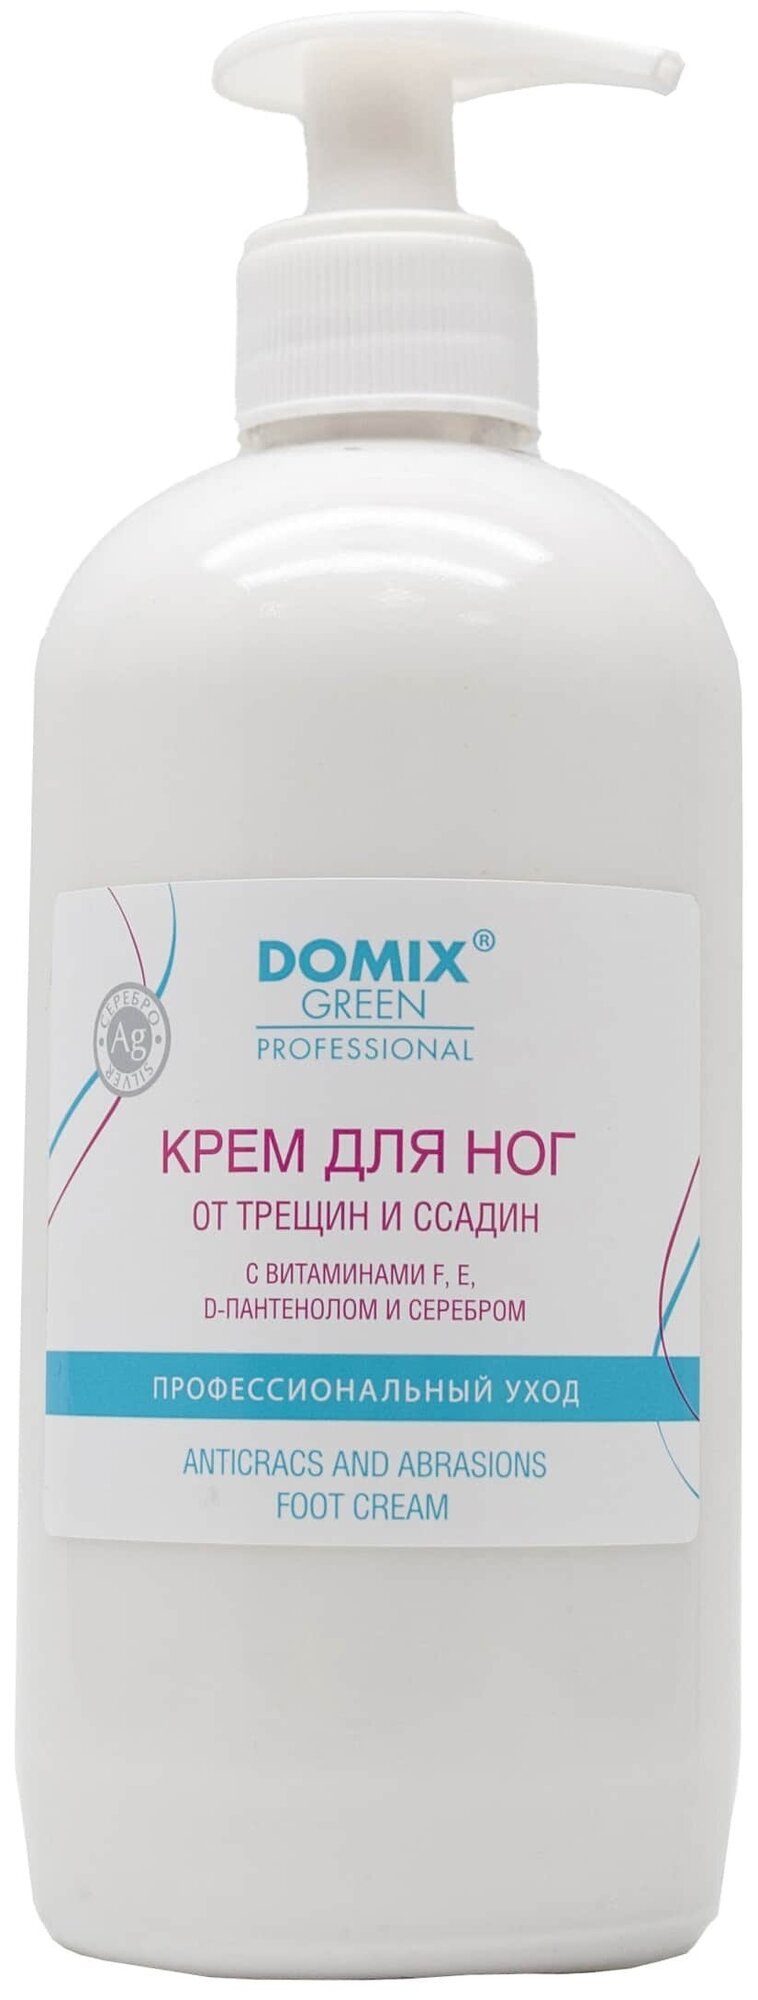 DOMIX GREEN PROFESSIONAL Крем для ног от трещин и ссадин с витаминами F, Е, D-пантенолом и серебром 500 мл